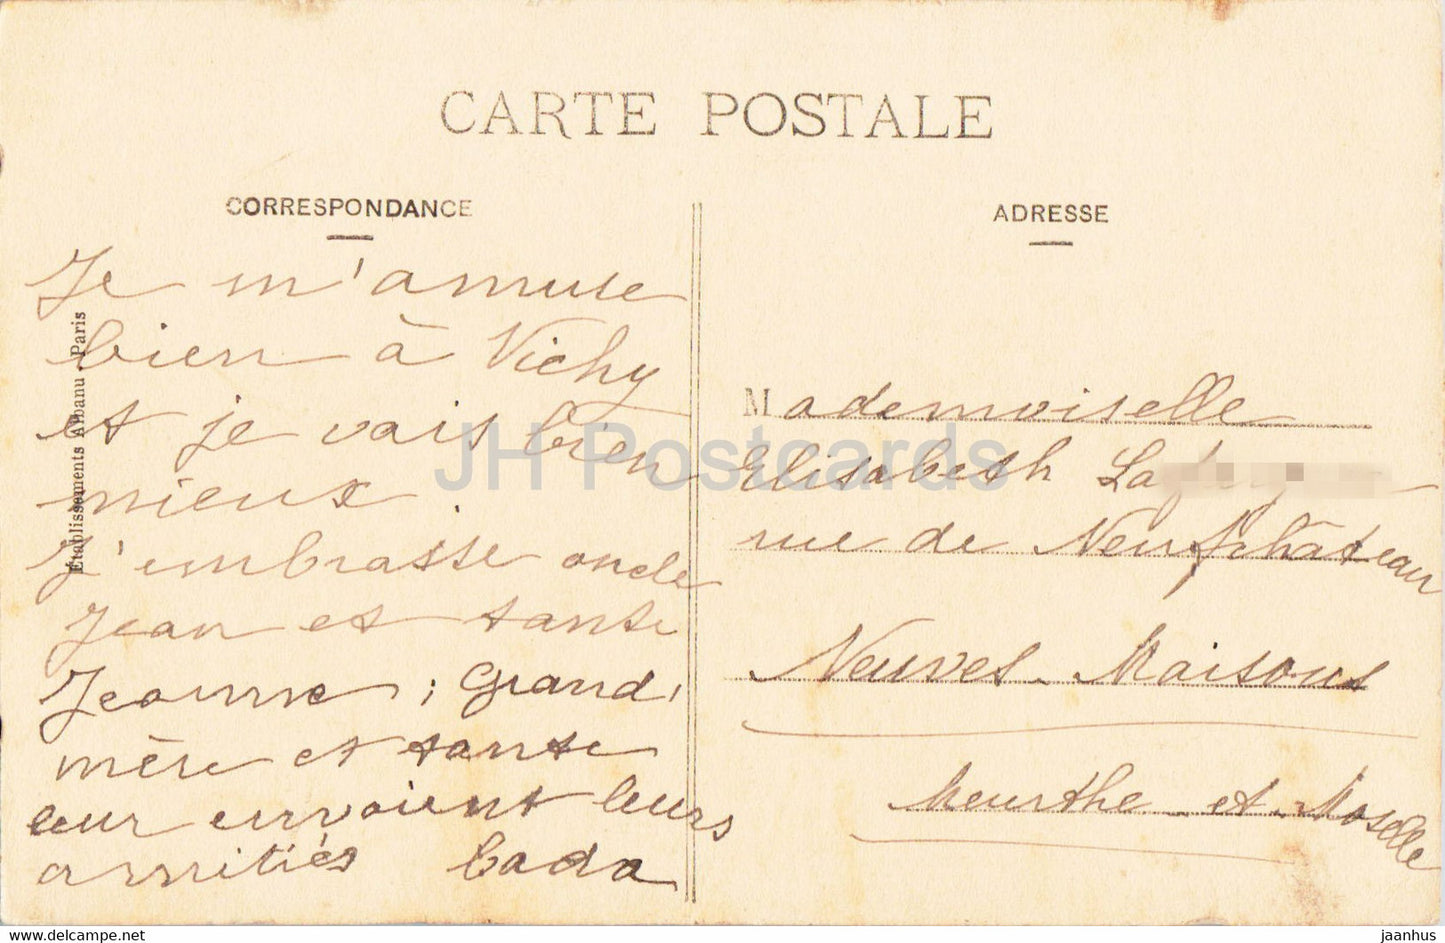 Vieux Bourbonnais - Vichy - Pont de Ris - 2348 - pont - illustration - carte postale ancienne - France - occasion